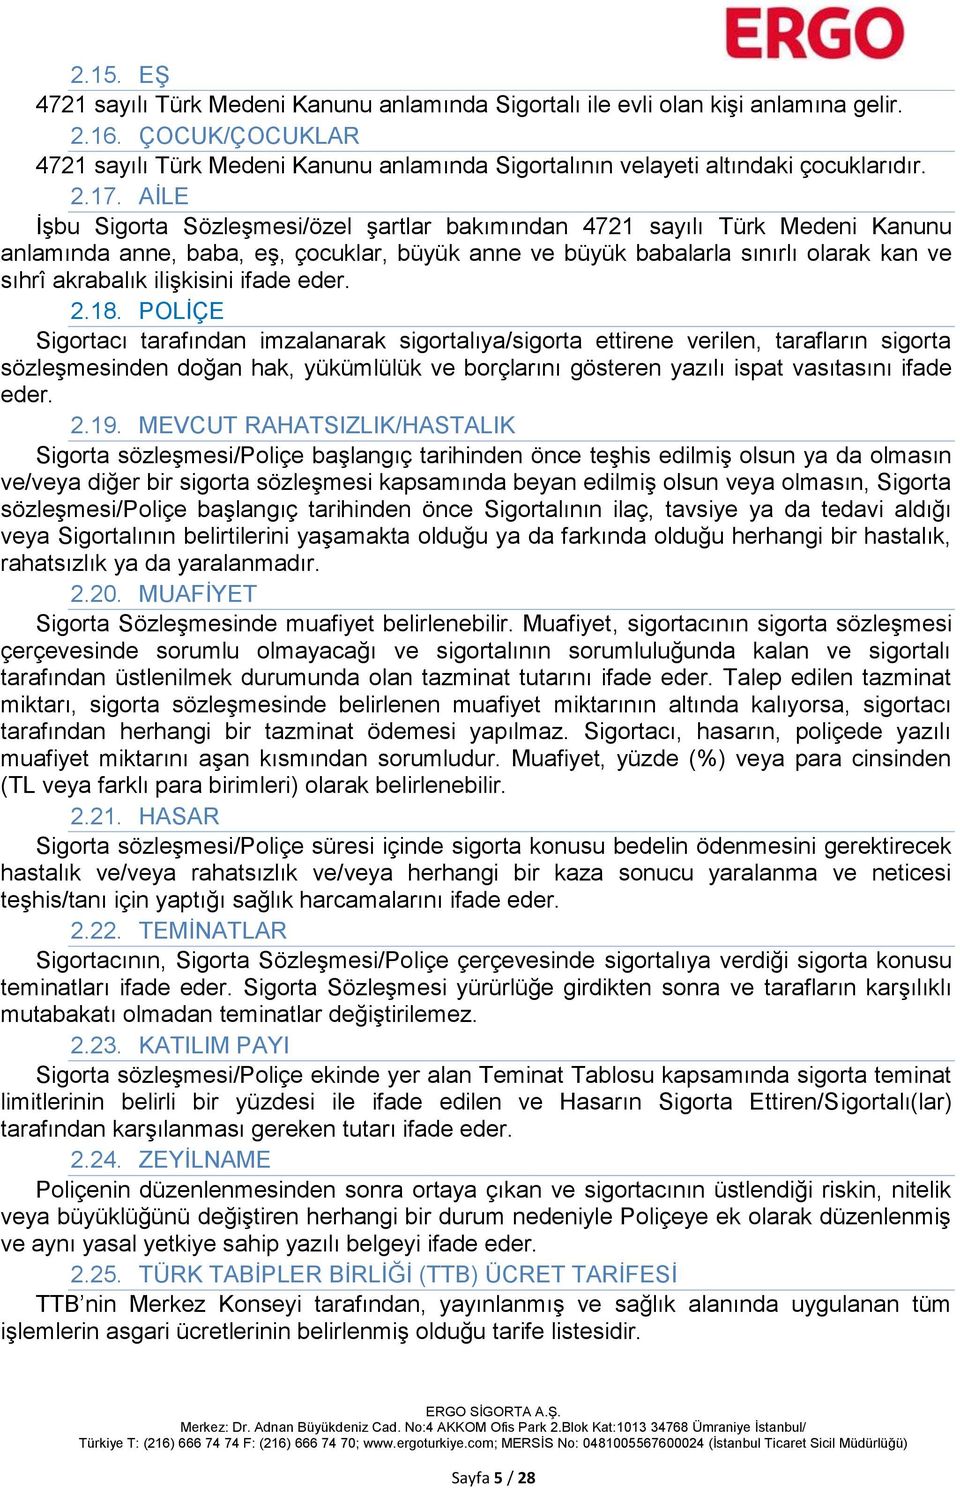 AİLE İşbu Sigorta Sözleşmesi/özel şartlar bakımından 4721 sayılı Türk Medeni Kanunu anlamında anne, baba, eş, çocuklar, büyük anne ve büyük babalarla sınırlı olarak kan ve sıhrî akrabalık ilişkisini